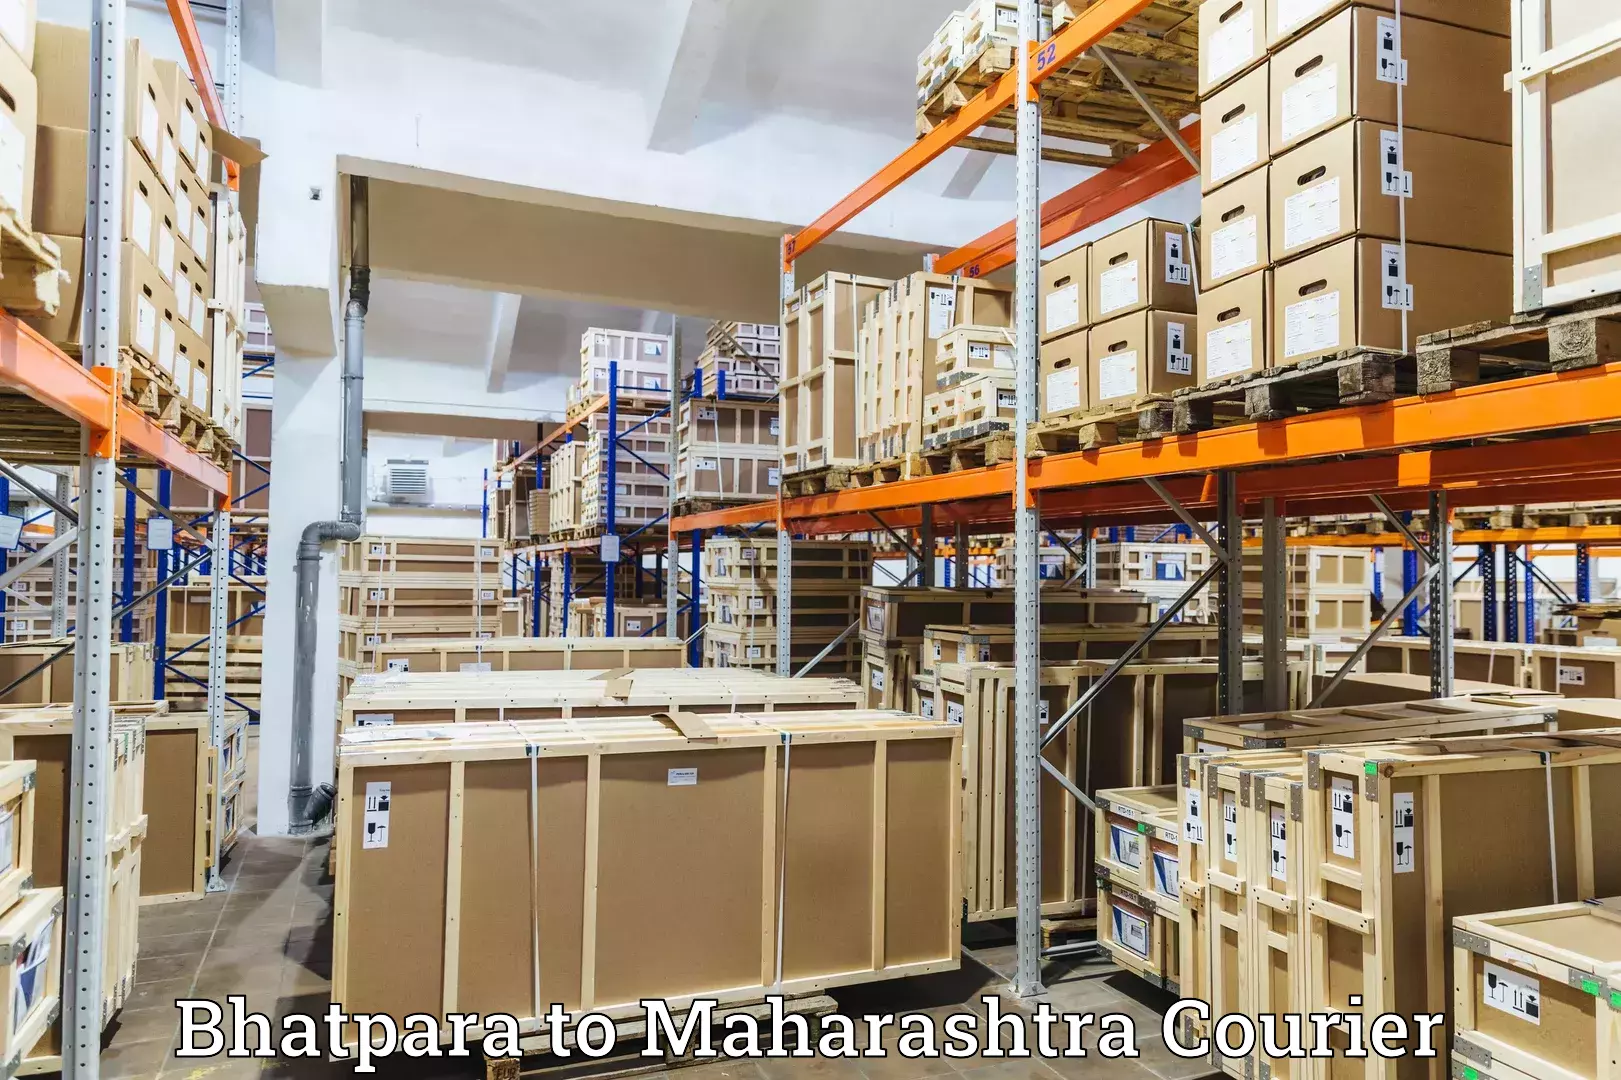 Express logistics providers Bhatpara to Maharashtra